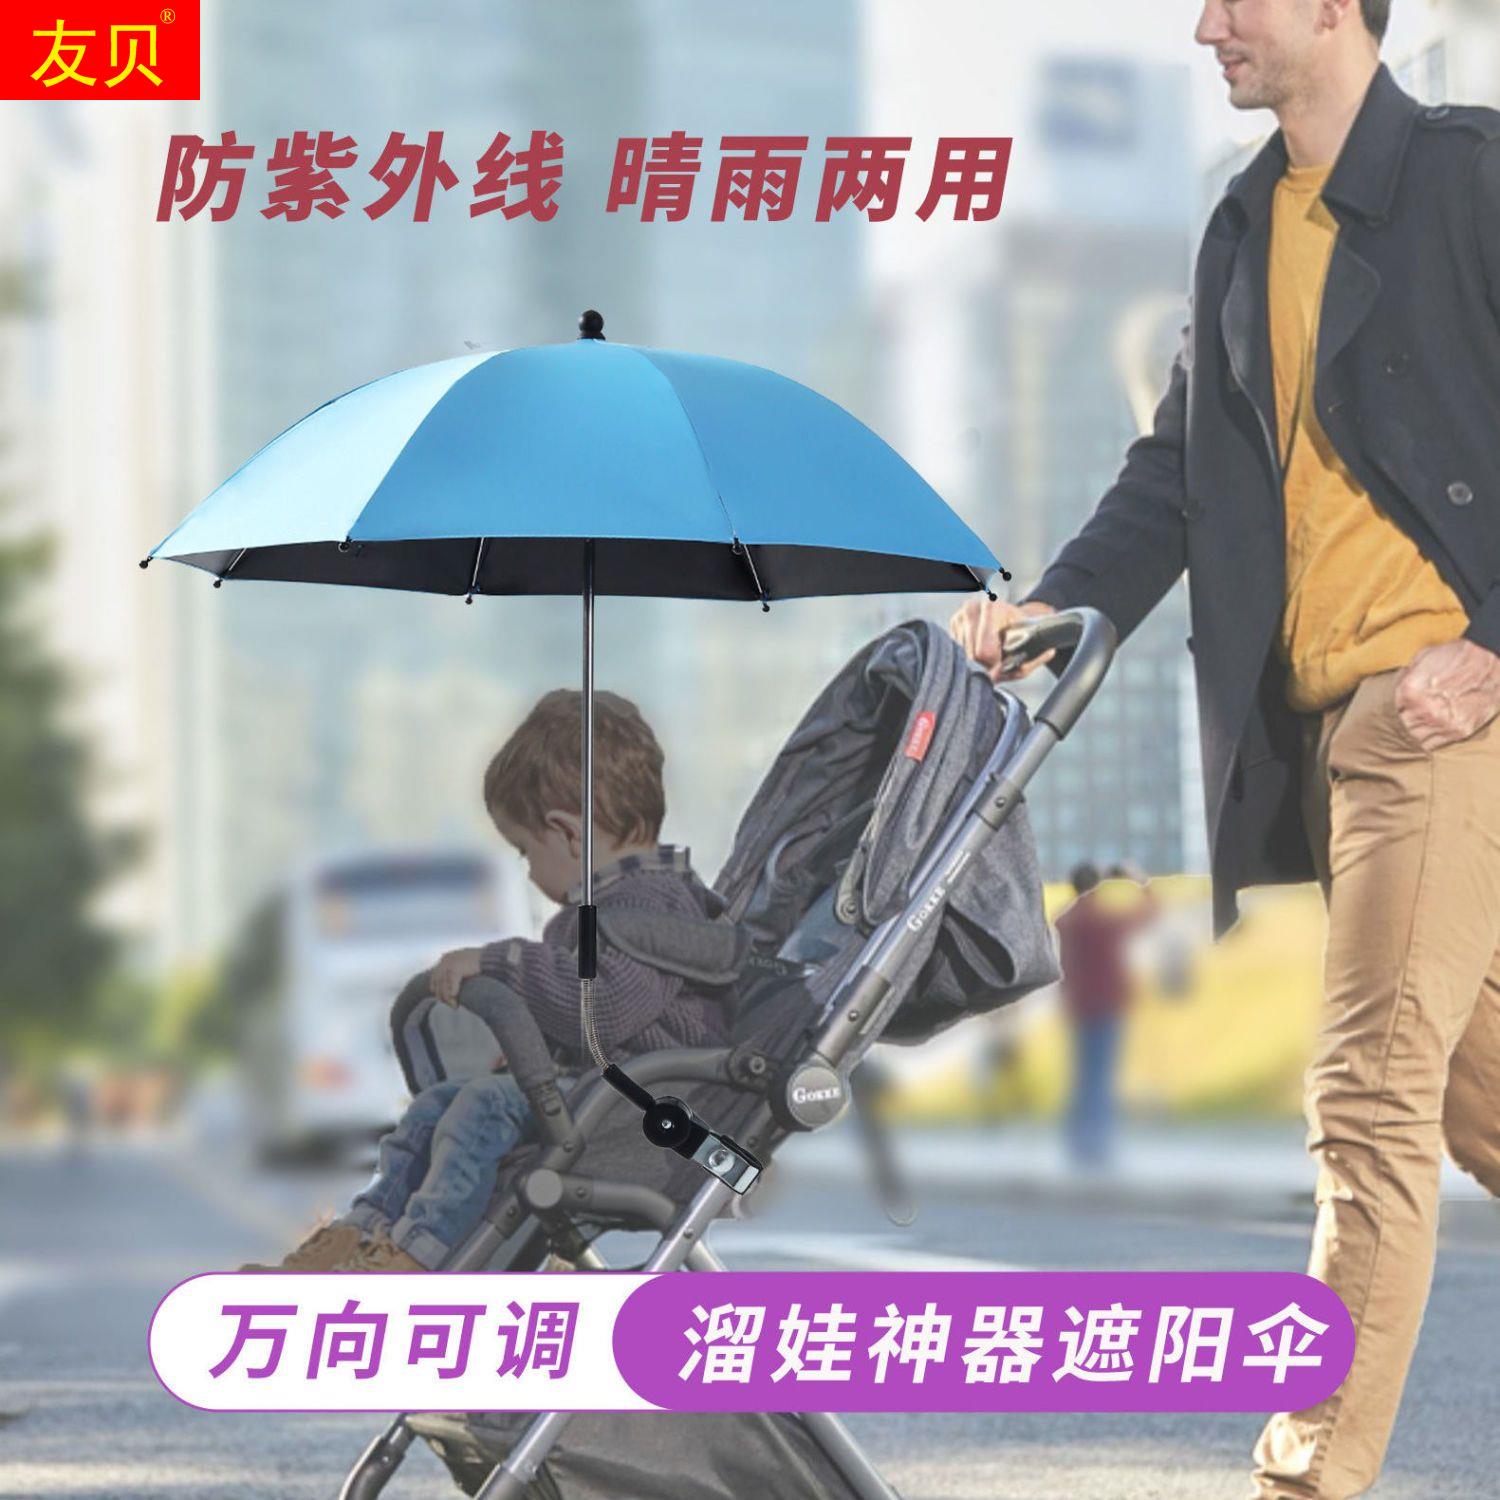 遛娃神器遮阳伞遮阳棚宝宝推车小雨伞婴儿车儿童三轮车太阳伞男女